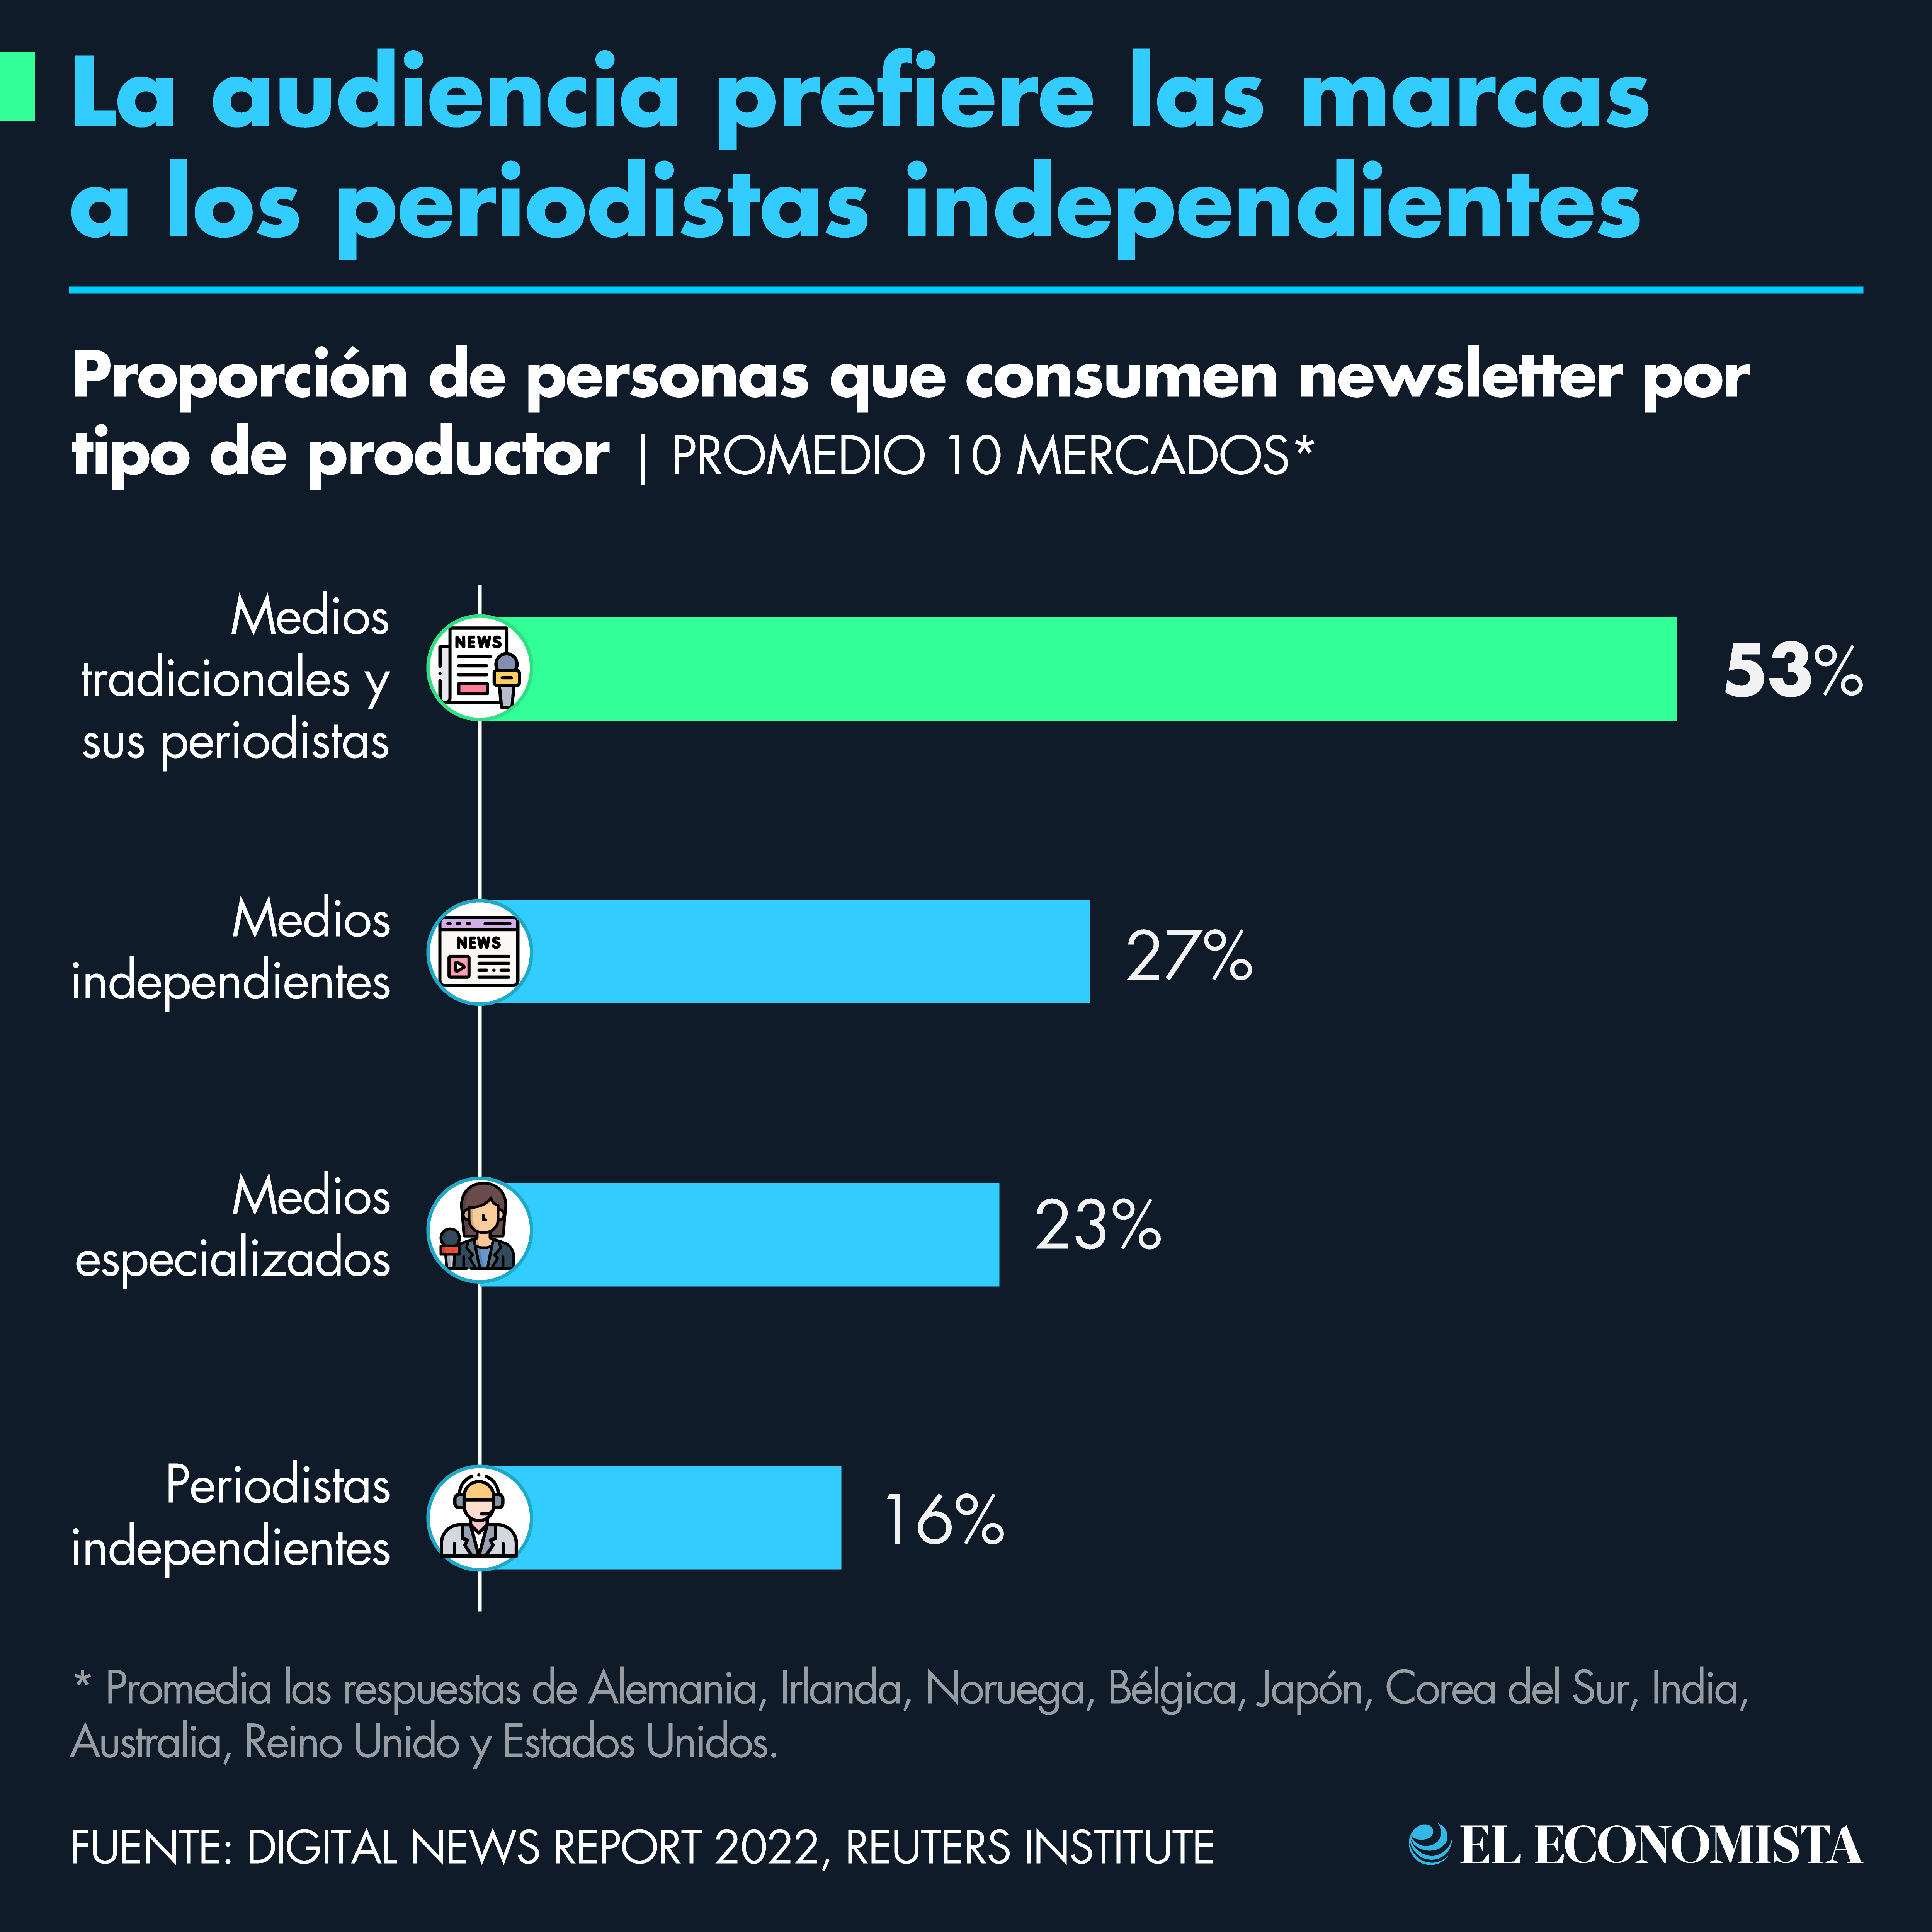 La audiencia prefiere las marcas a los periodistas independientes. Fuente: Digital News Report 2022, Reuters Institute